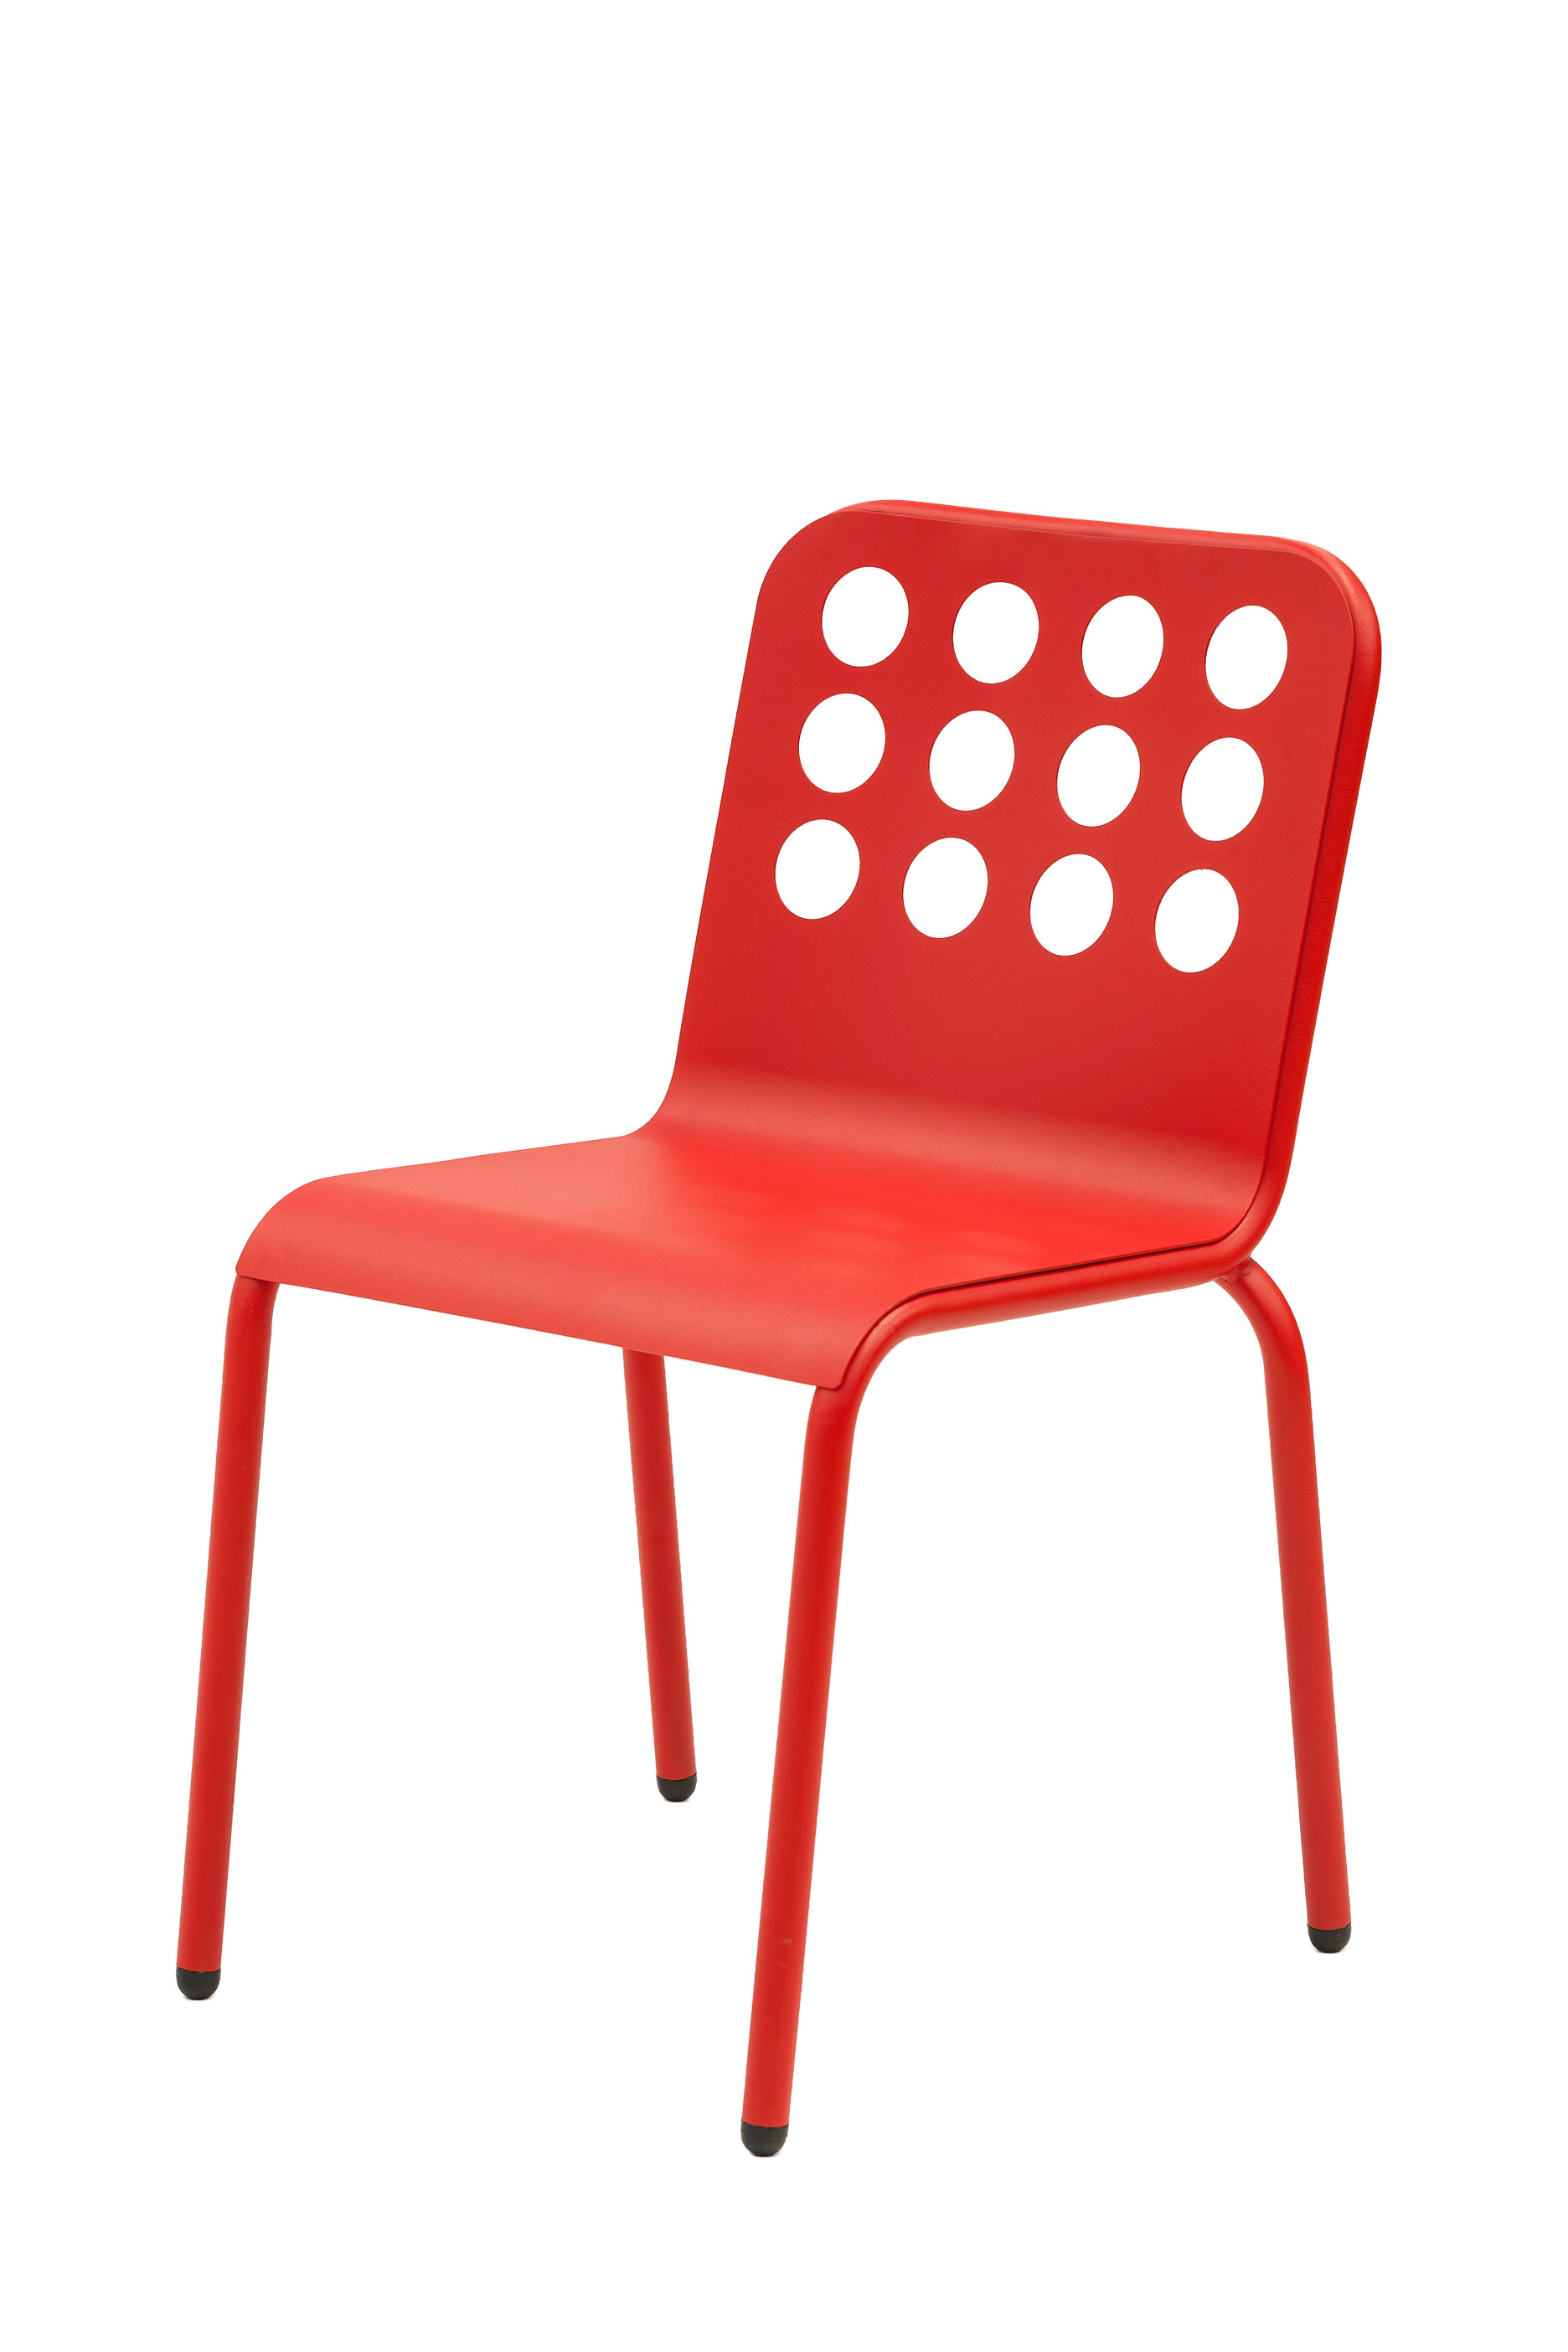 Chaise en acier rouge